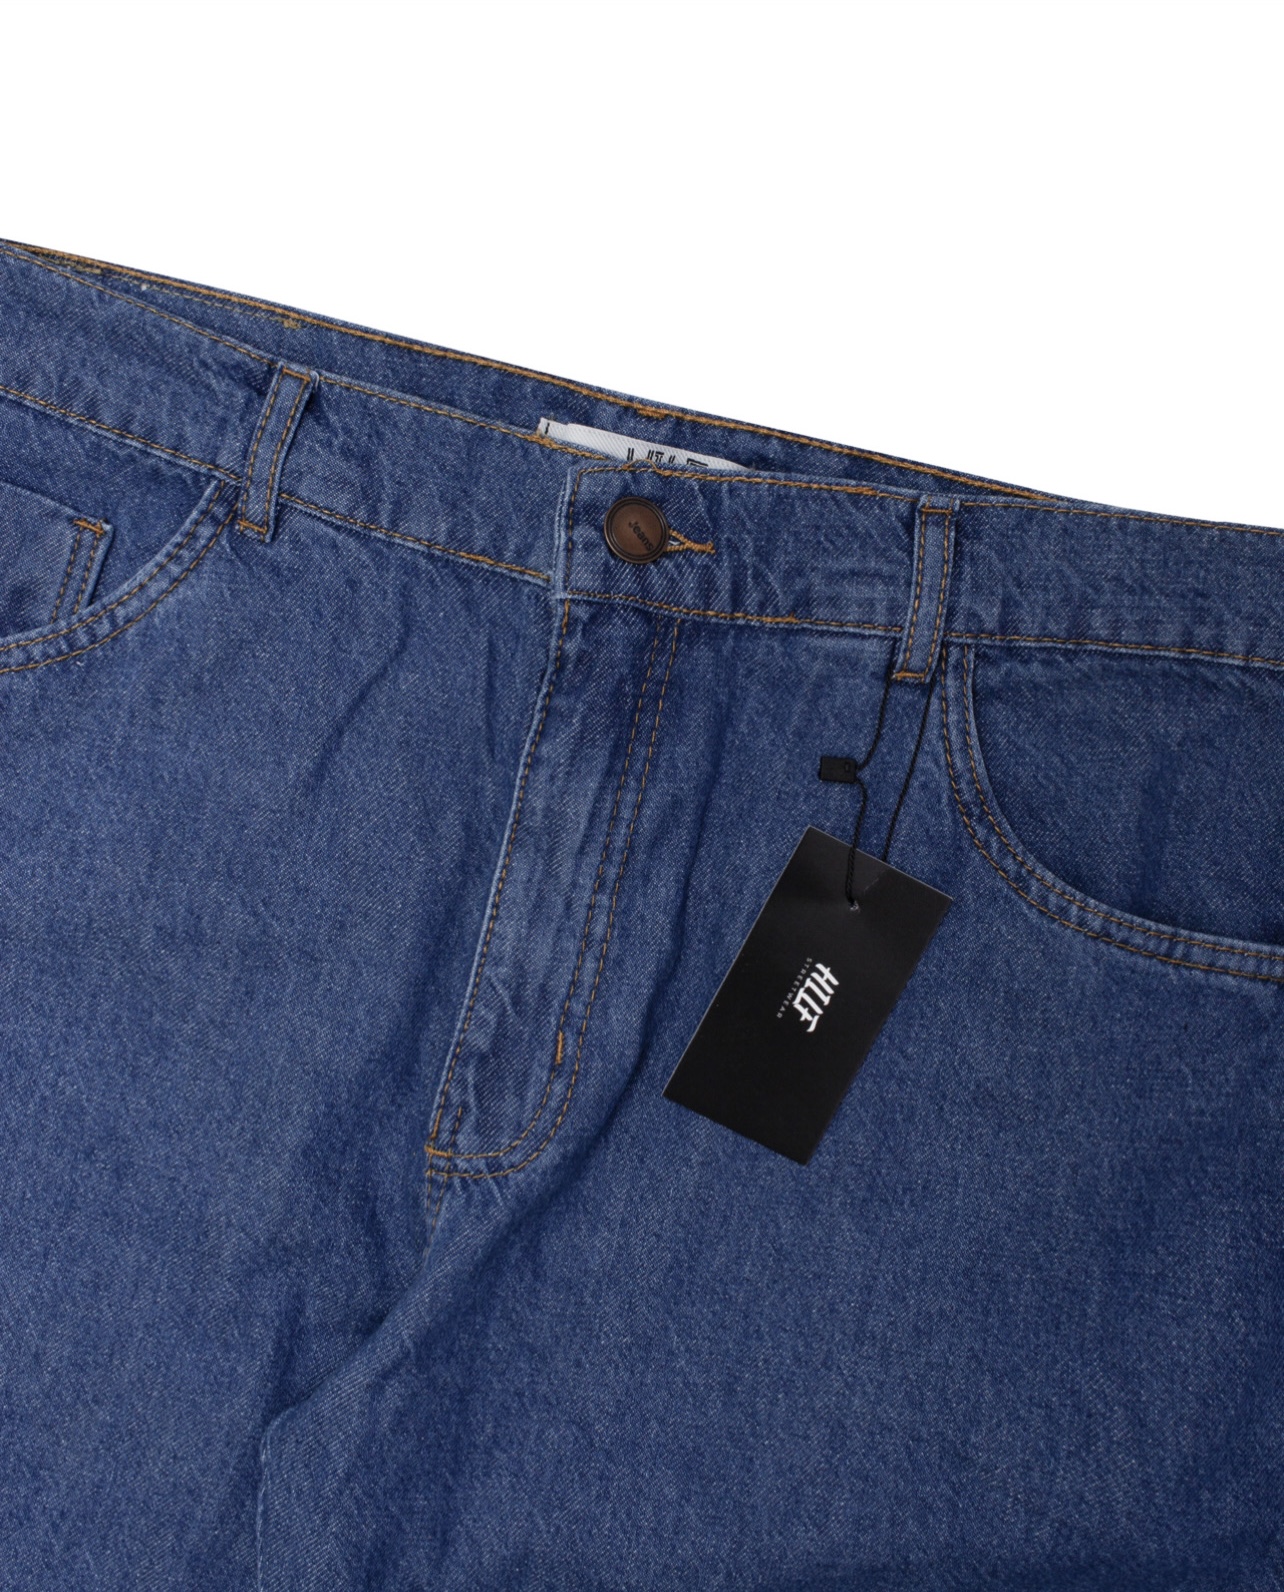 Calça Balão jeans intermediária - Hilf